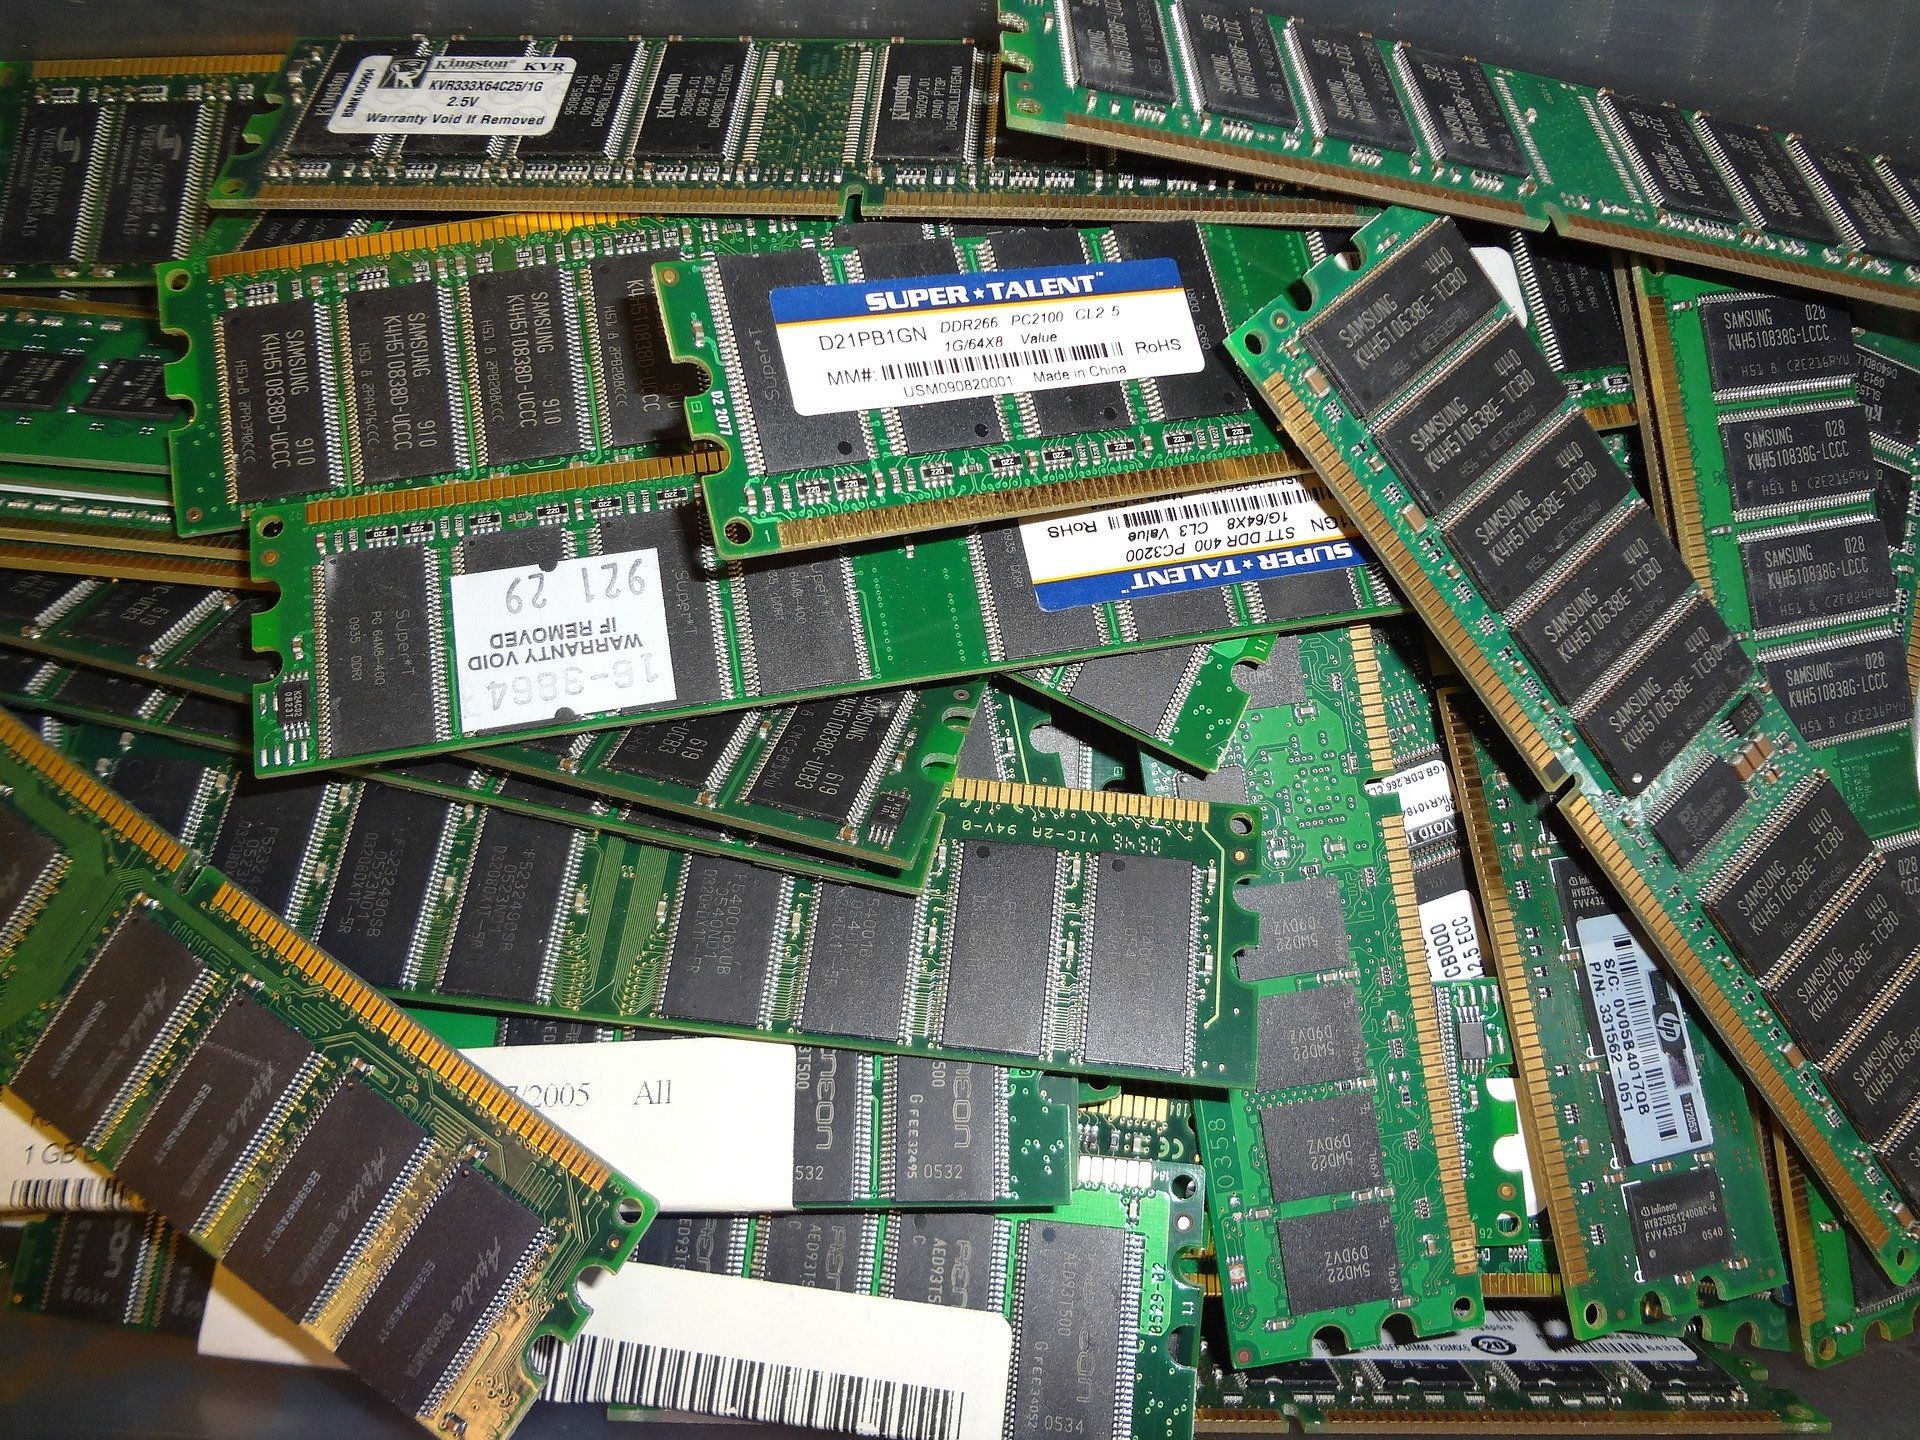 13 июля 1992 года <i>IBM</i>, <i>Toshiba </i>и <i>Siemens </i>объединились для разработки чипов памяти